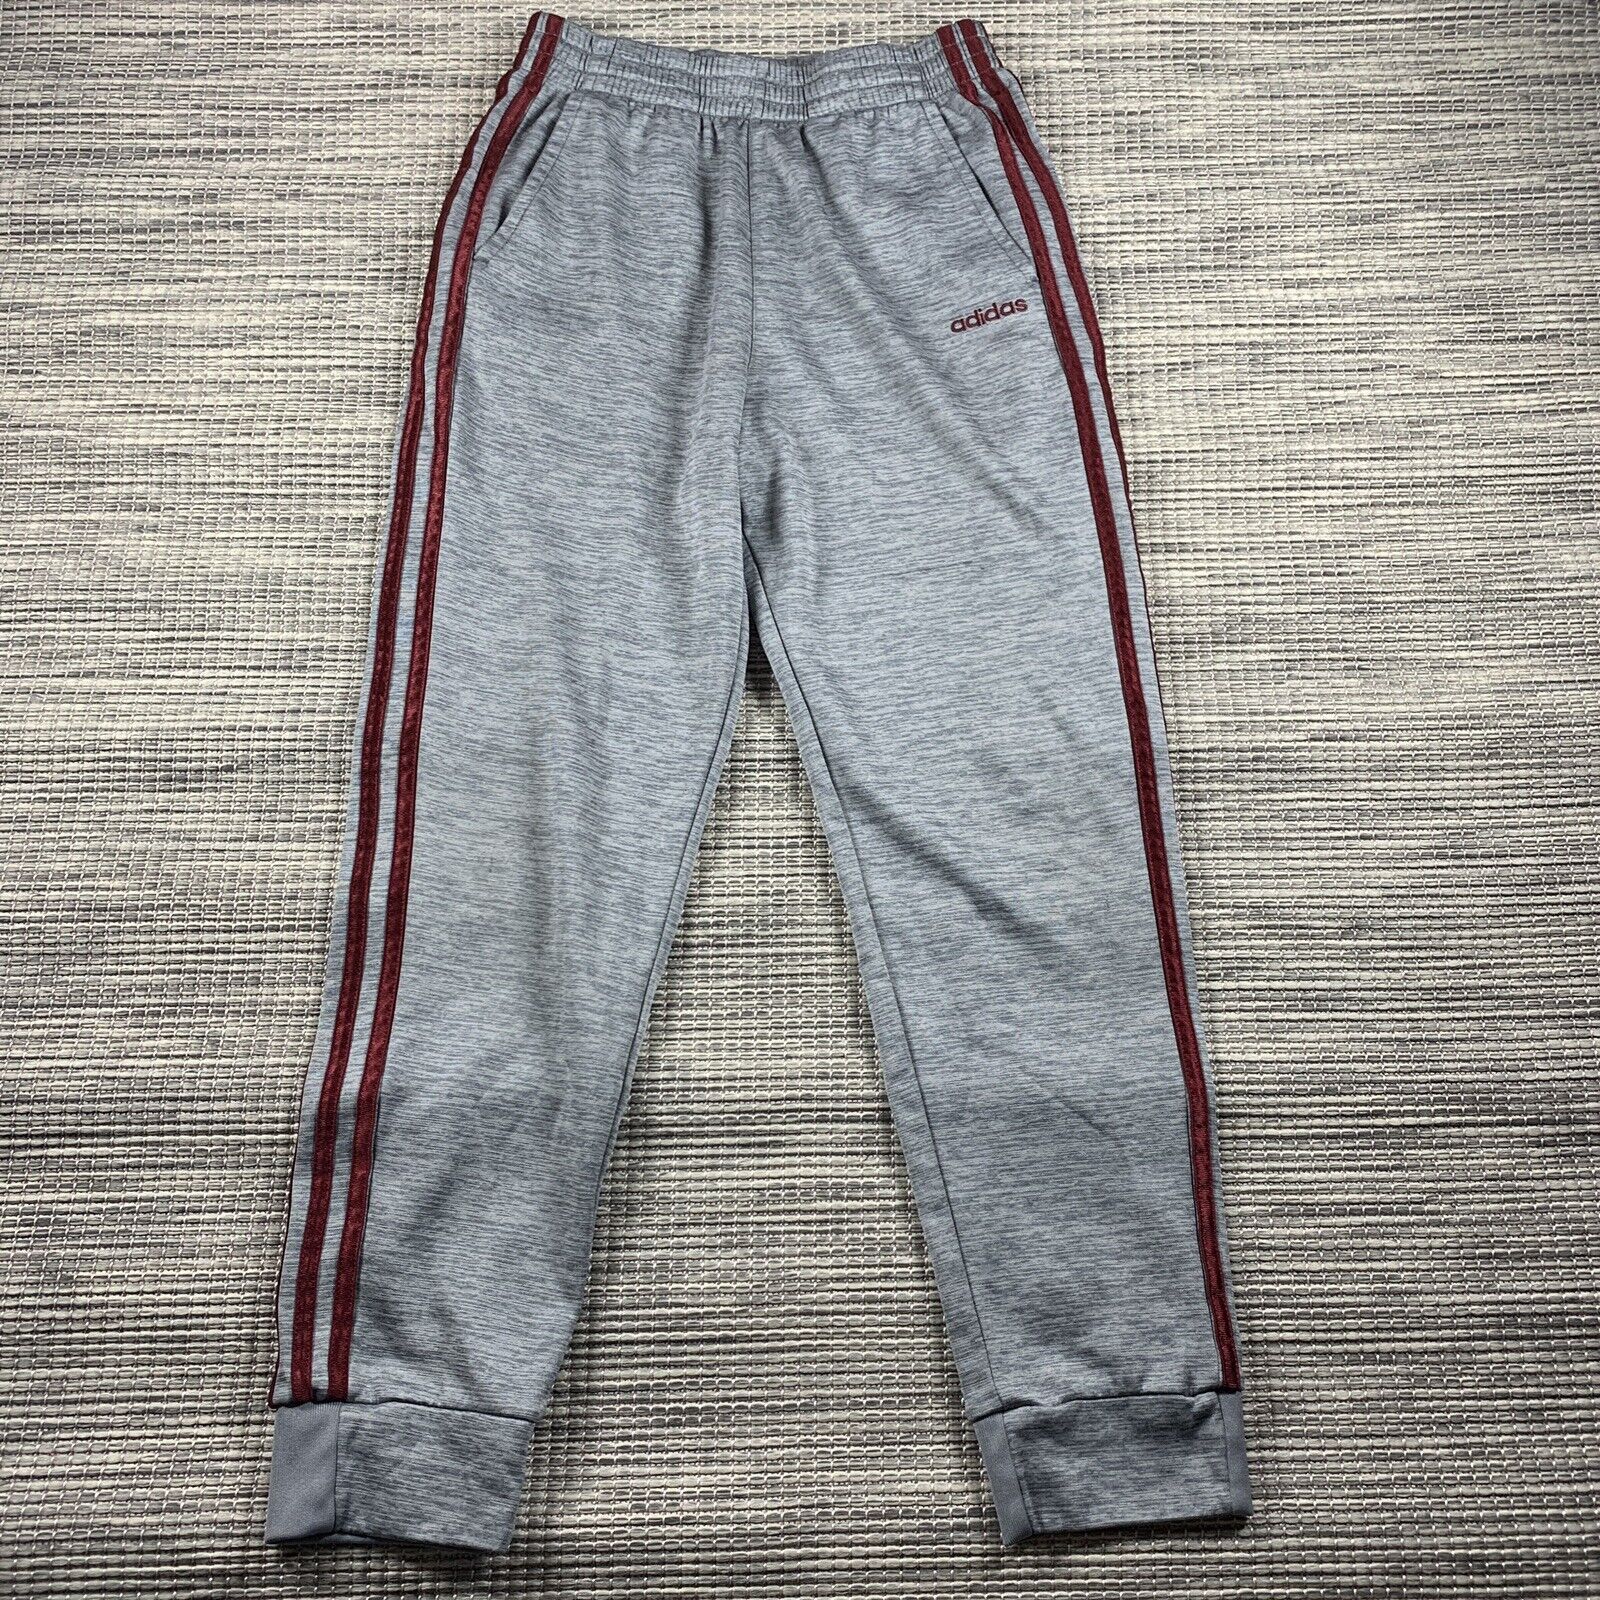 Adidas Joggers Track Pants Size YXL 18-20 Gray Maroon Striped Pockets Youth Boys